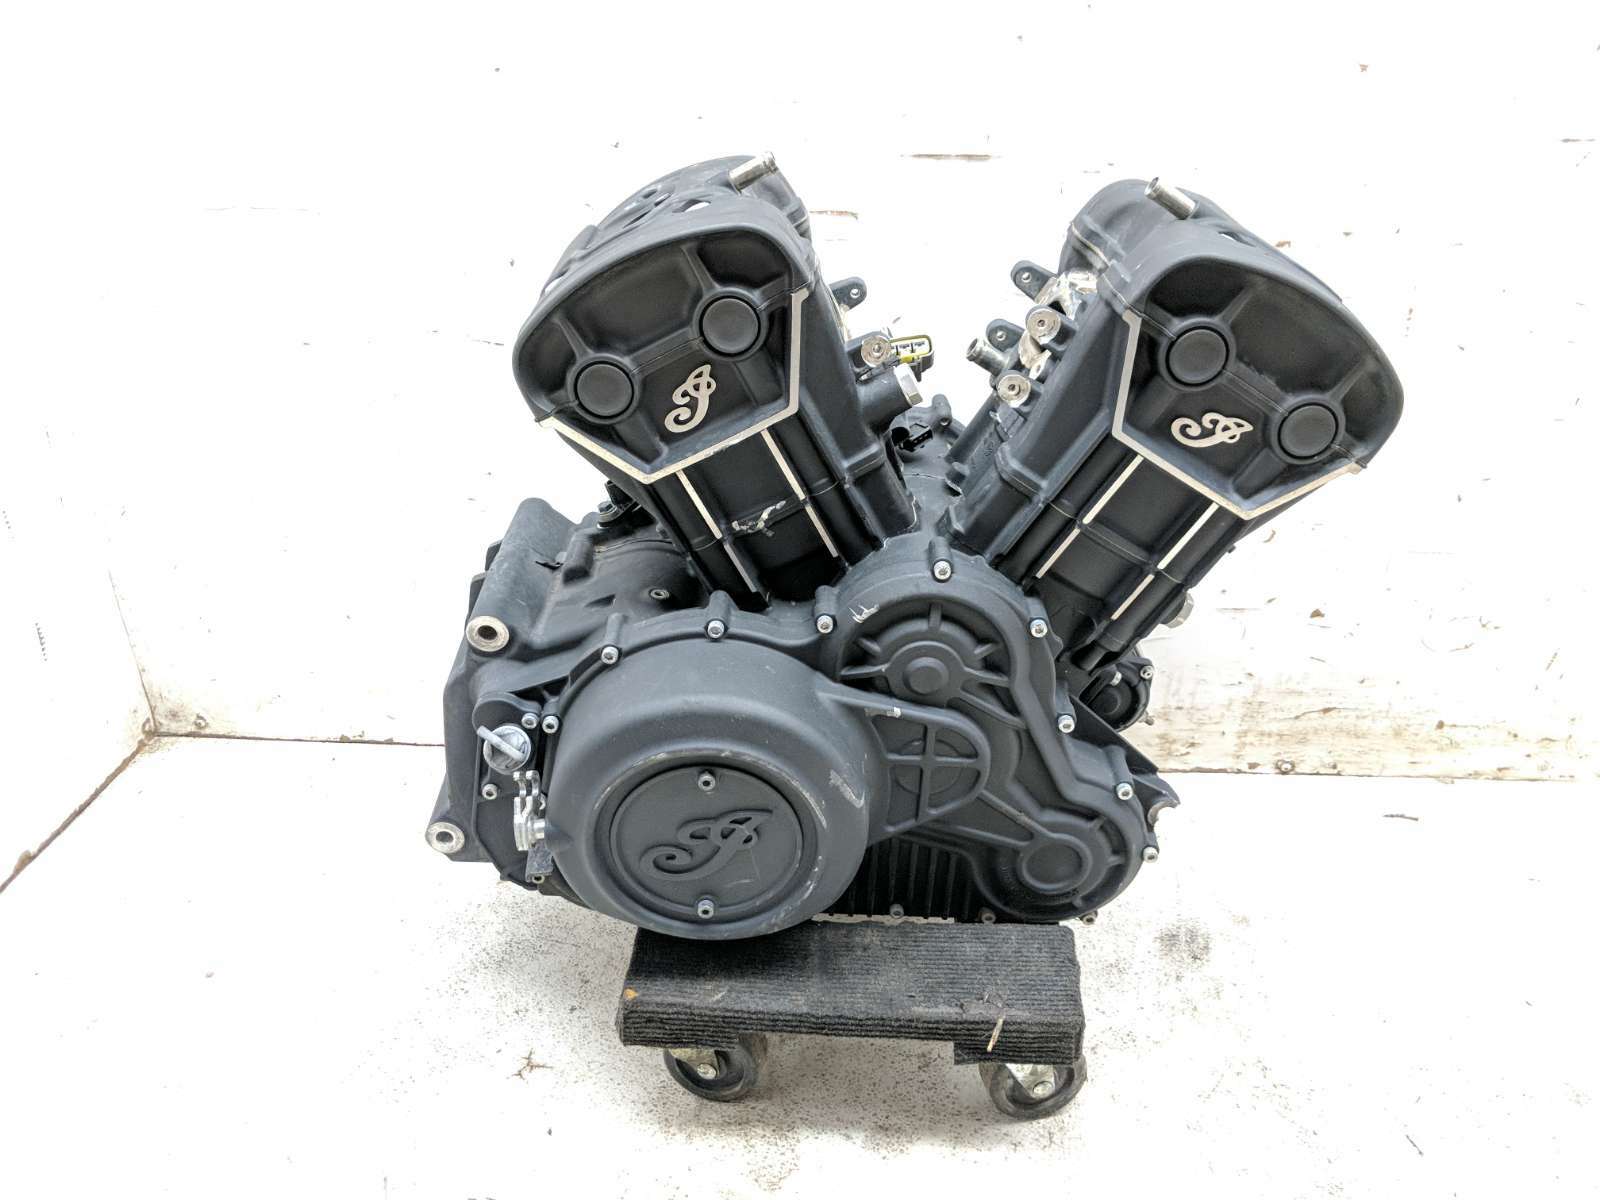 21 Indian Scout Bobber Engine Motor